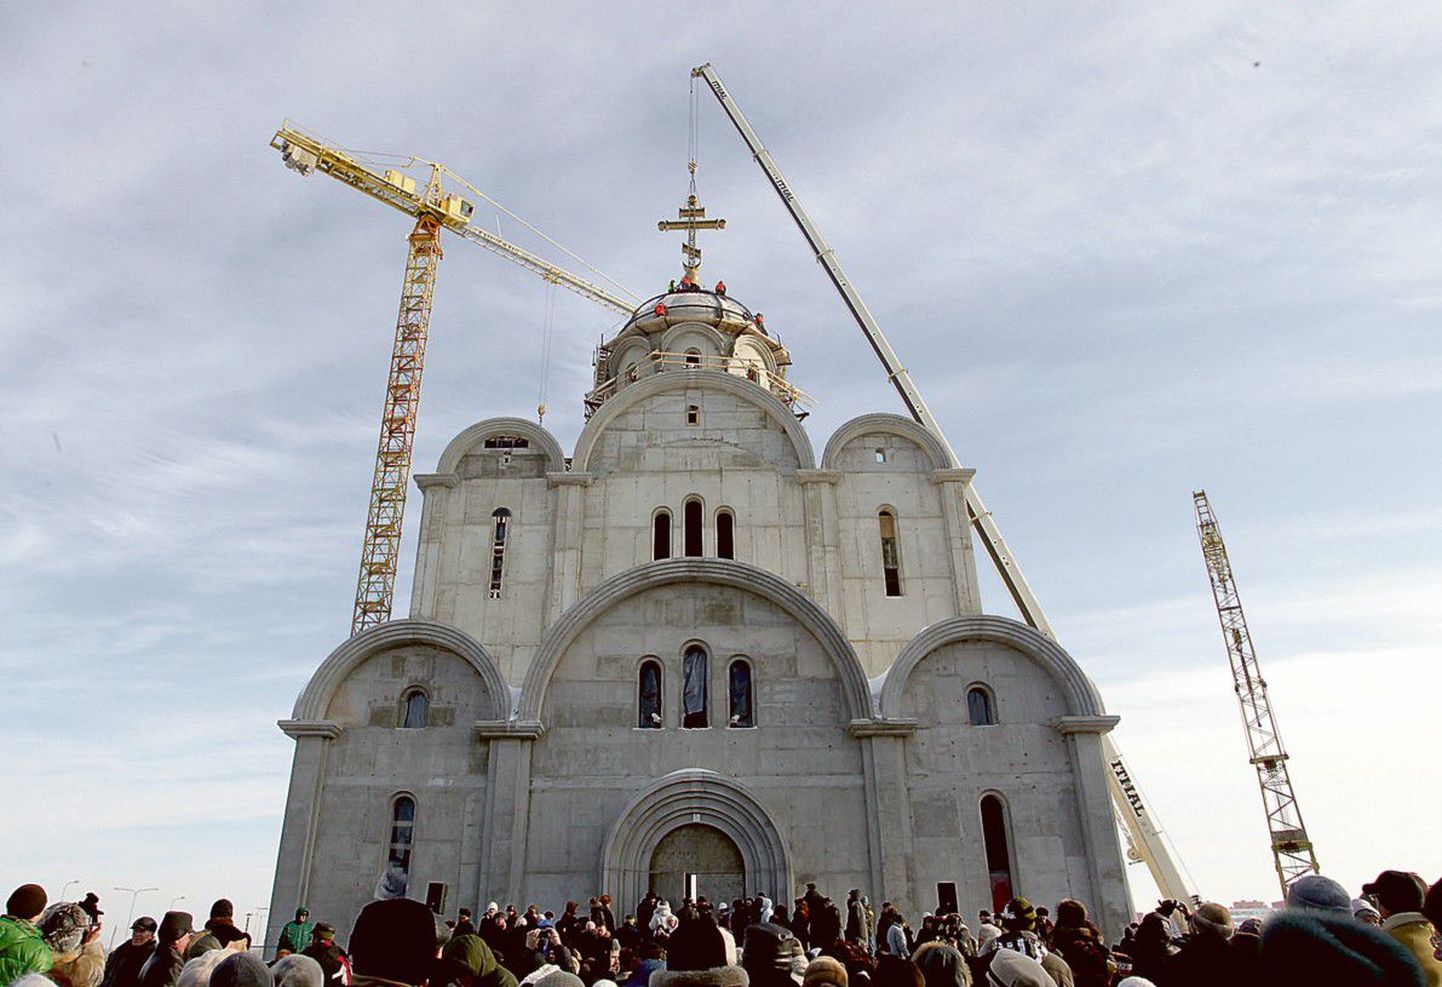 Освящение и воздвижение полуторатонного креста на купол нового храма в Ласнамяэ.